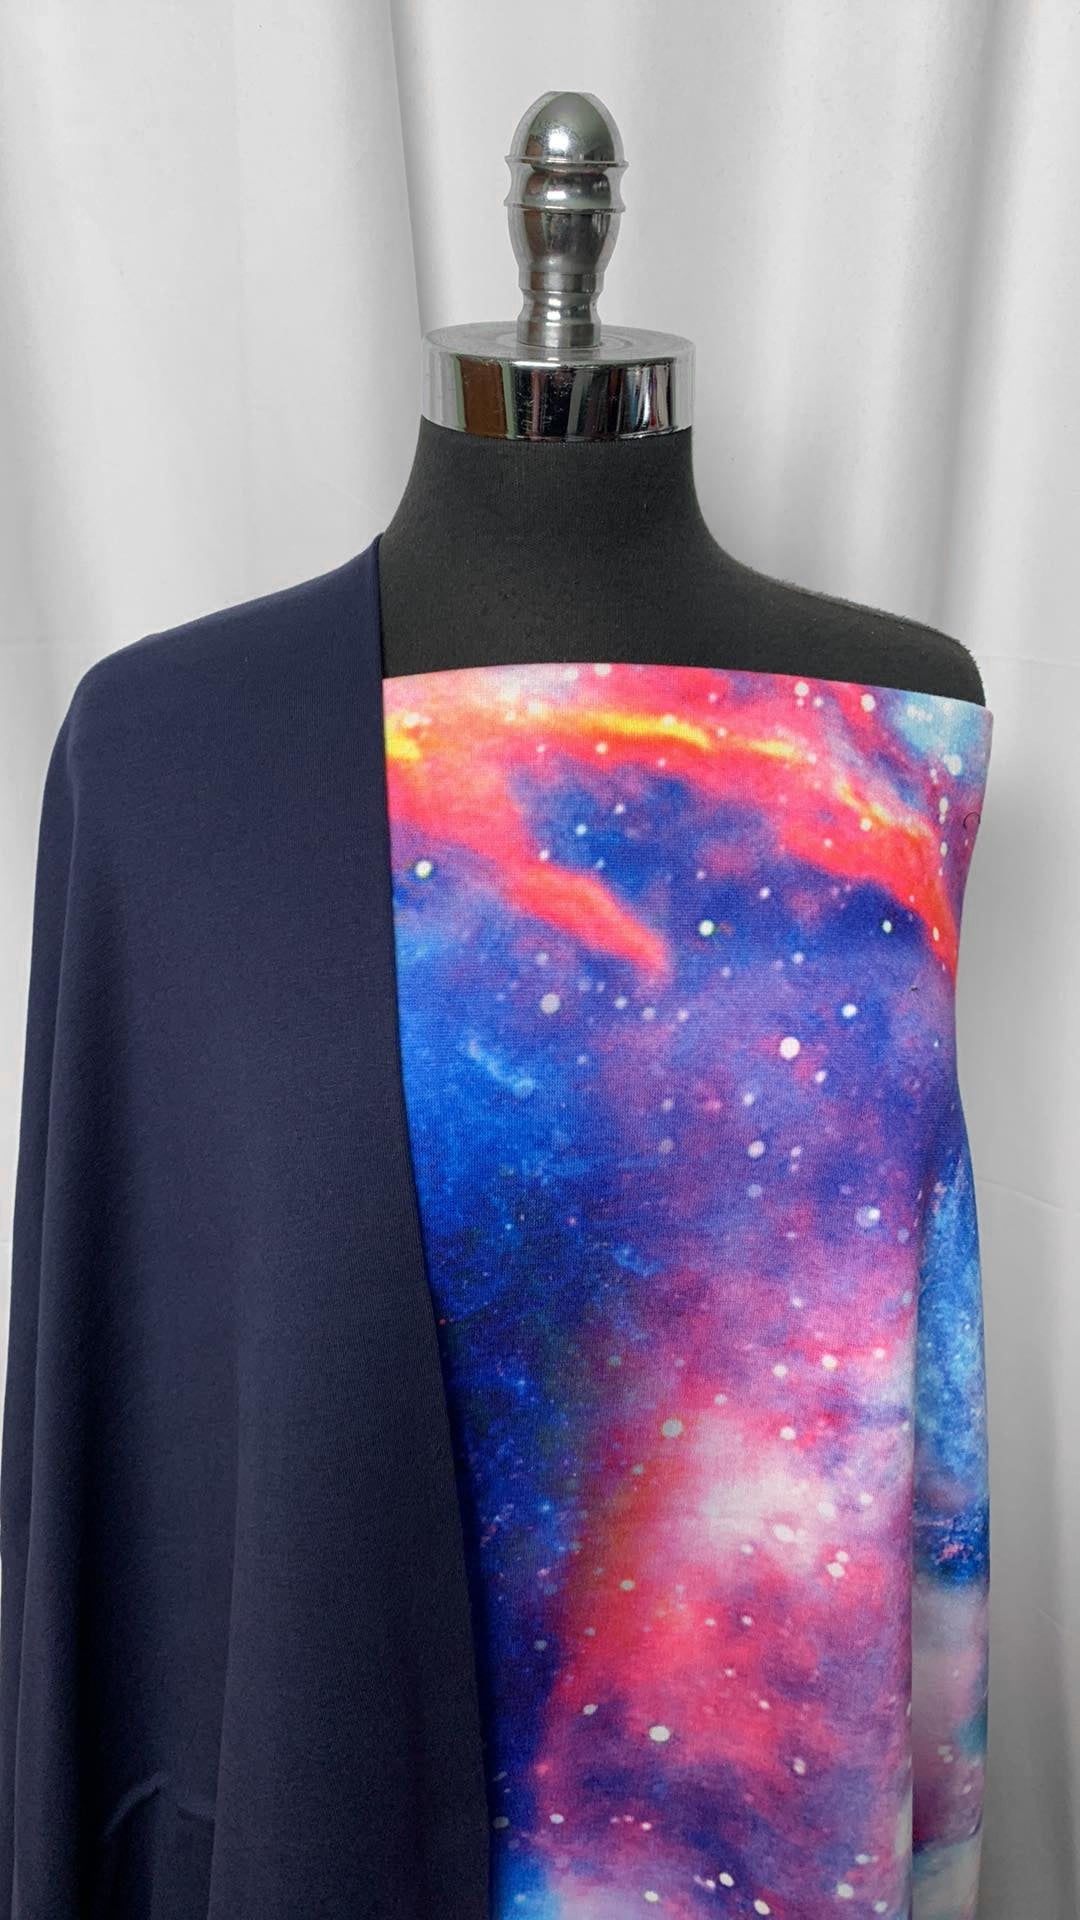 NAVY/GALAXY BUNDLE : 3YD Galaxy Sweatshirt Fleece (NO STRETCH) & 1YD Navy Combed Cotton 1x1 Rib : A2199